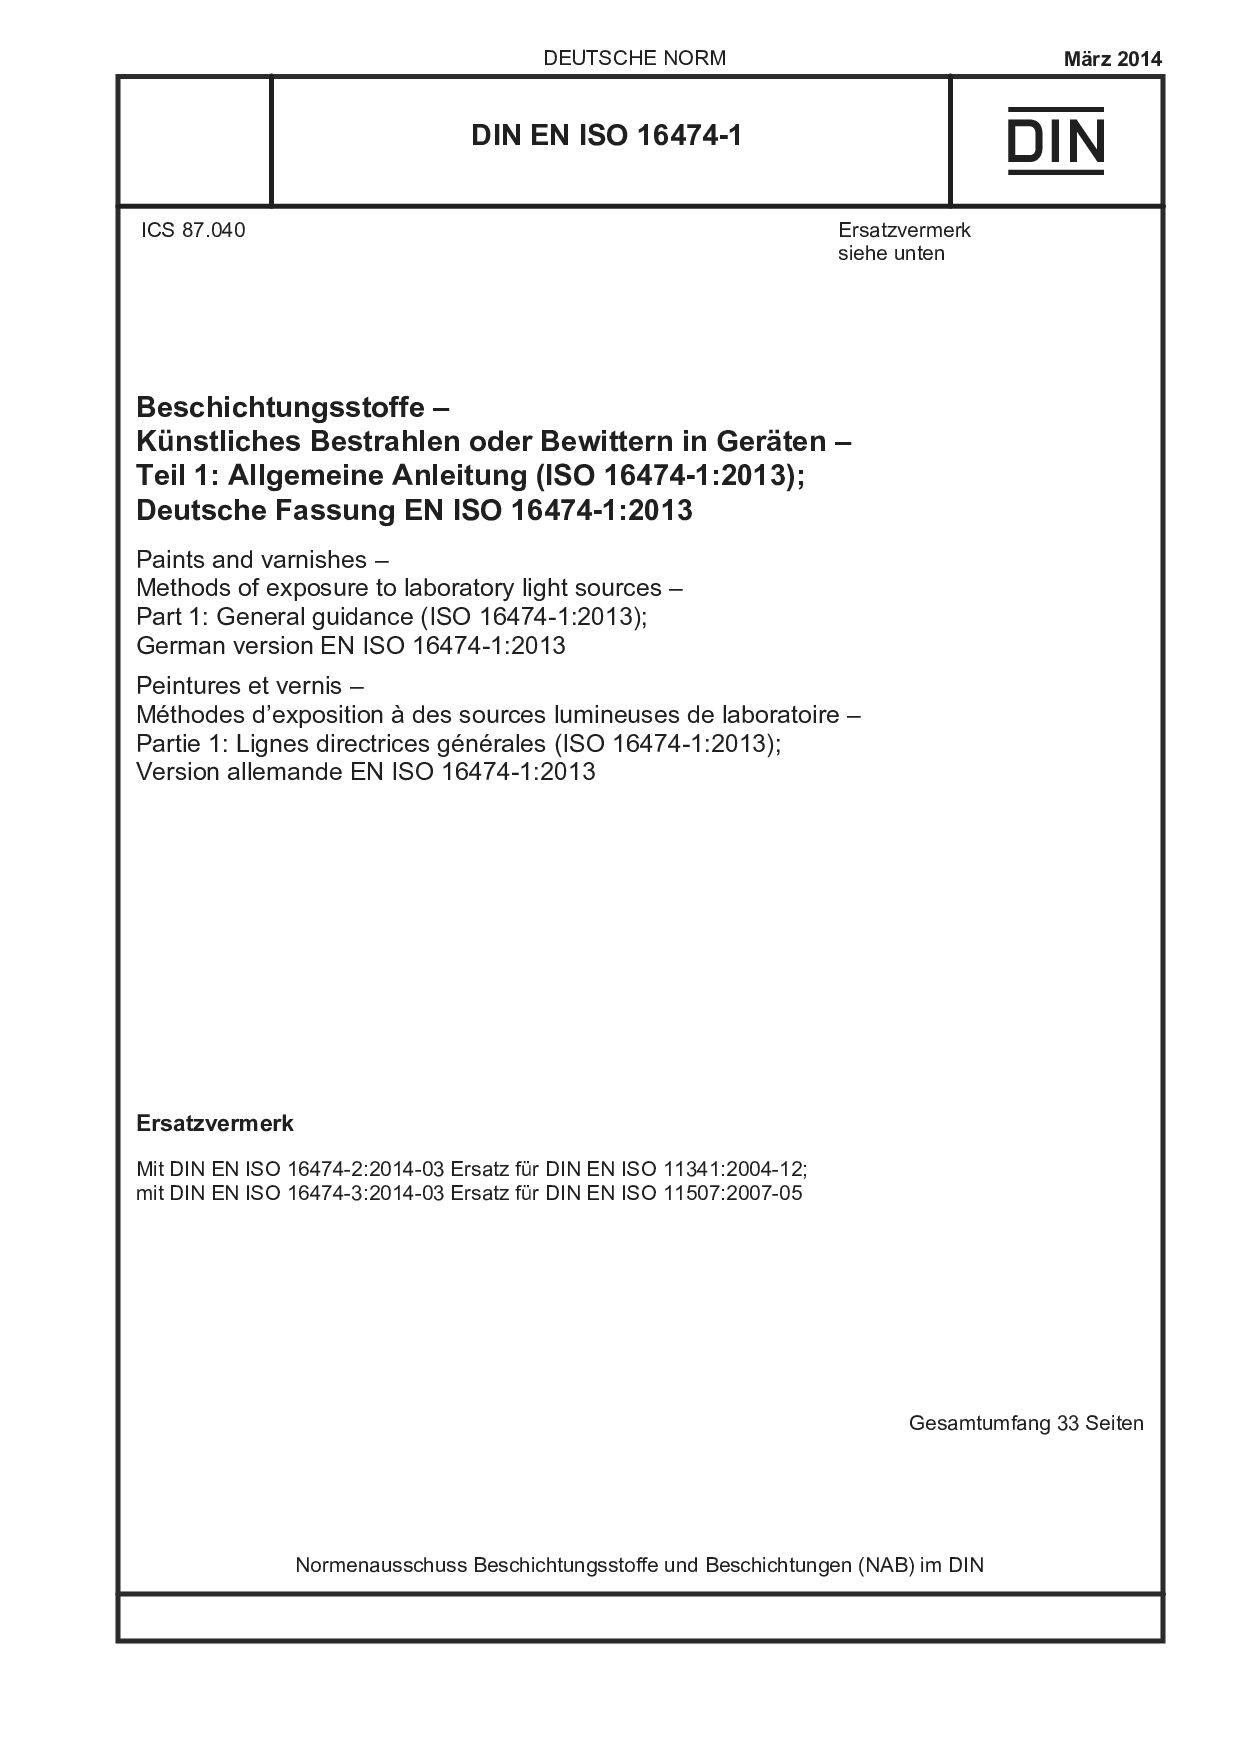 DIN EN ISO 16474-1:2014封面图